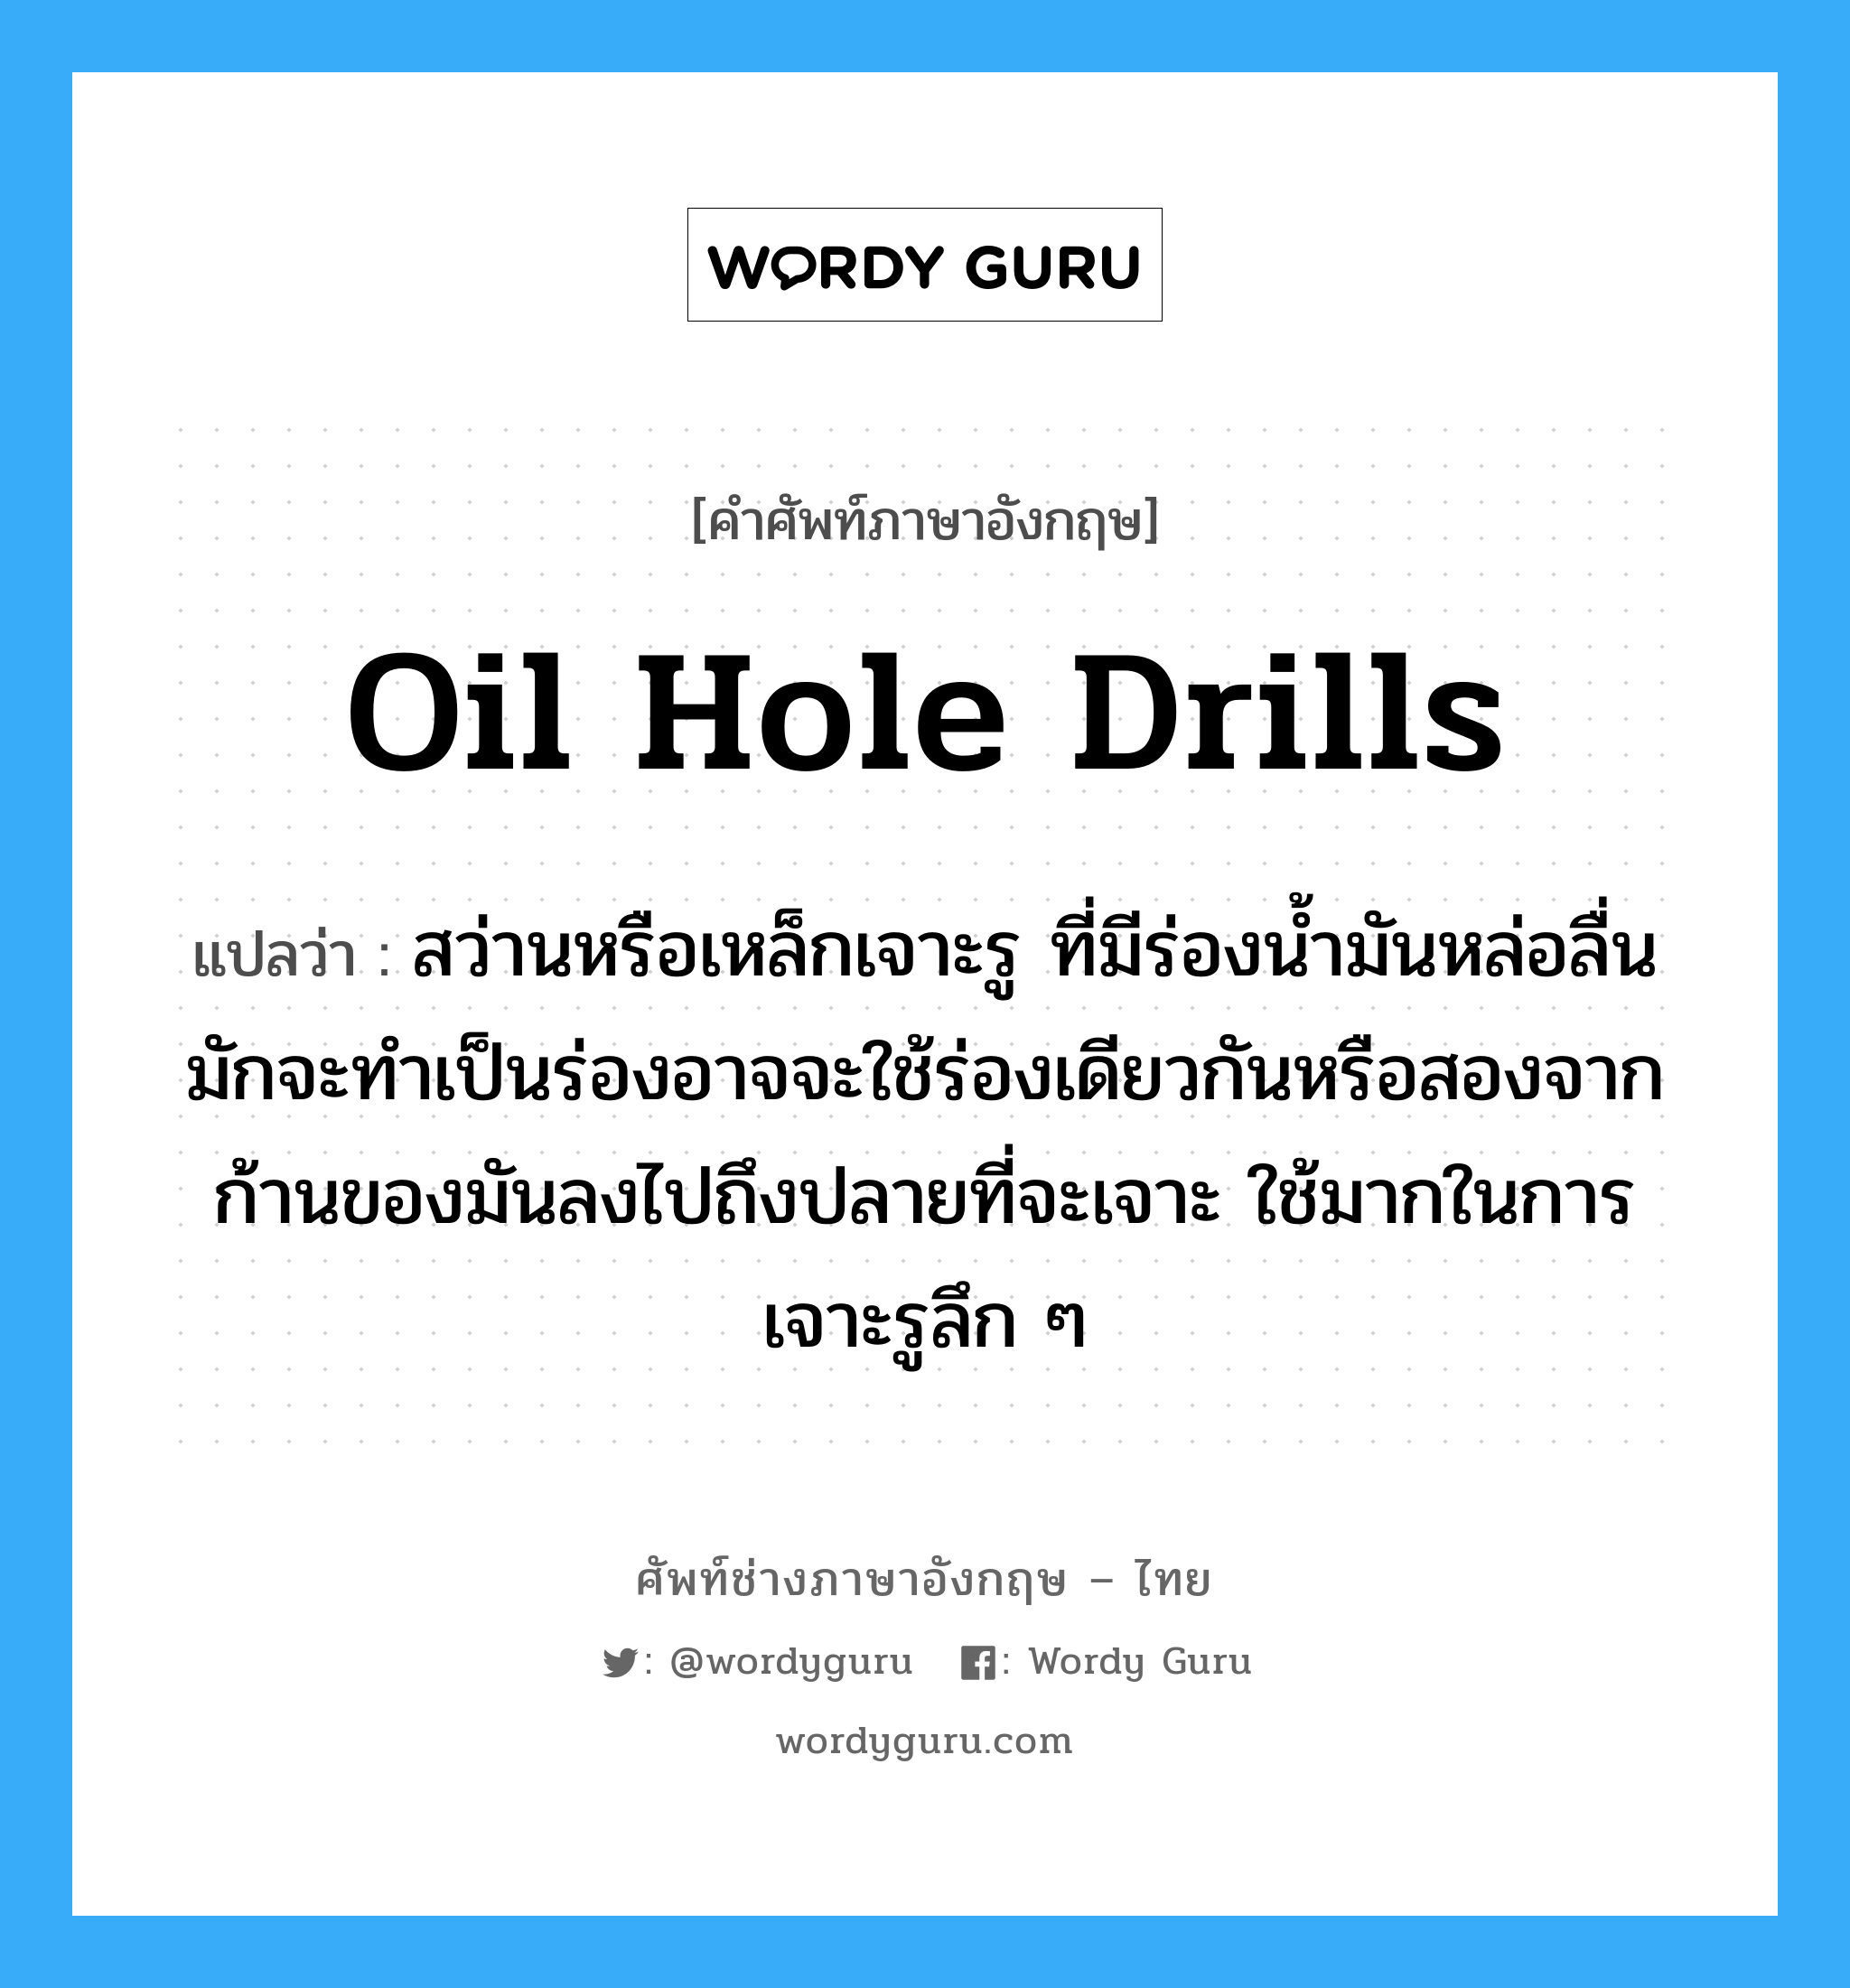 oil hole drills แปลว่า?, คำศัพท์ช่างภาษาอังกฤษ - ไทย oil hole drills คำศัพท์ภาษาอังกฤษ oil hole drills แปลว่า สว่านหรือเหล็กเจาะรู ที่มีร่องน้ำมันหล่อลื่น มักจะทำเป็นร่องอาจจะใช้ร่องเดียวกันหรือสองจากก้านของมันลงไปถึงปลายที่จะเจาะ ใช้มากในการเจาะรูลึก ๆ